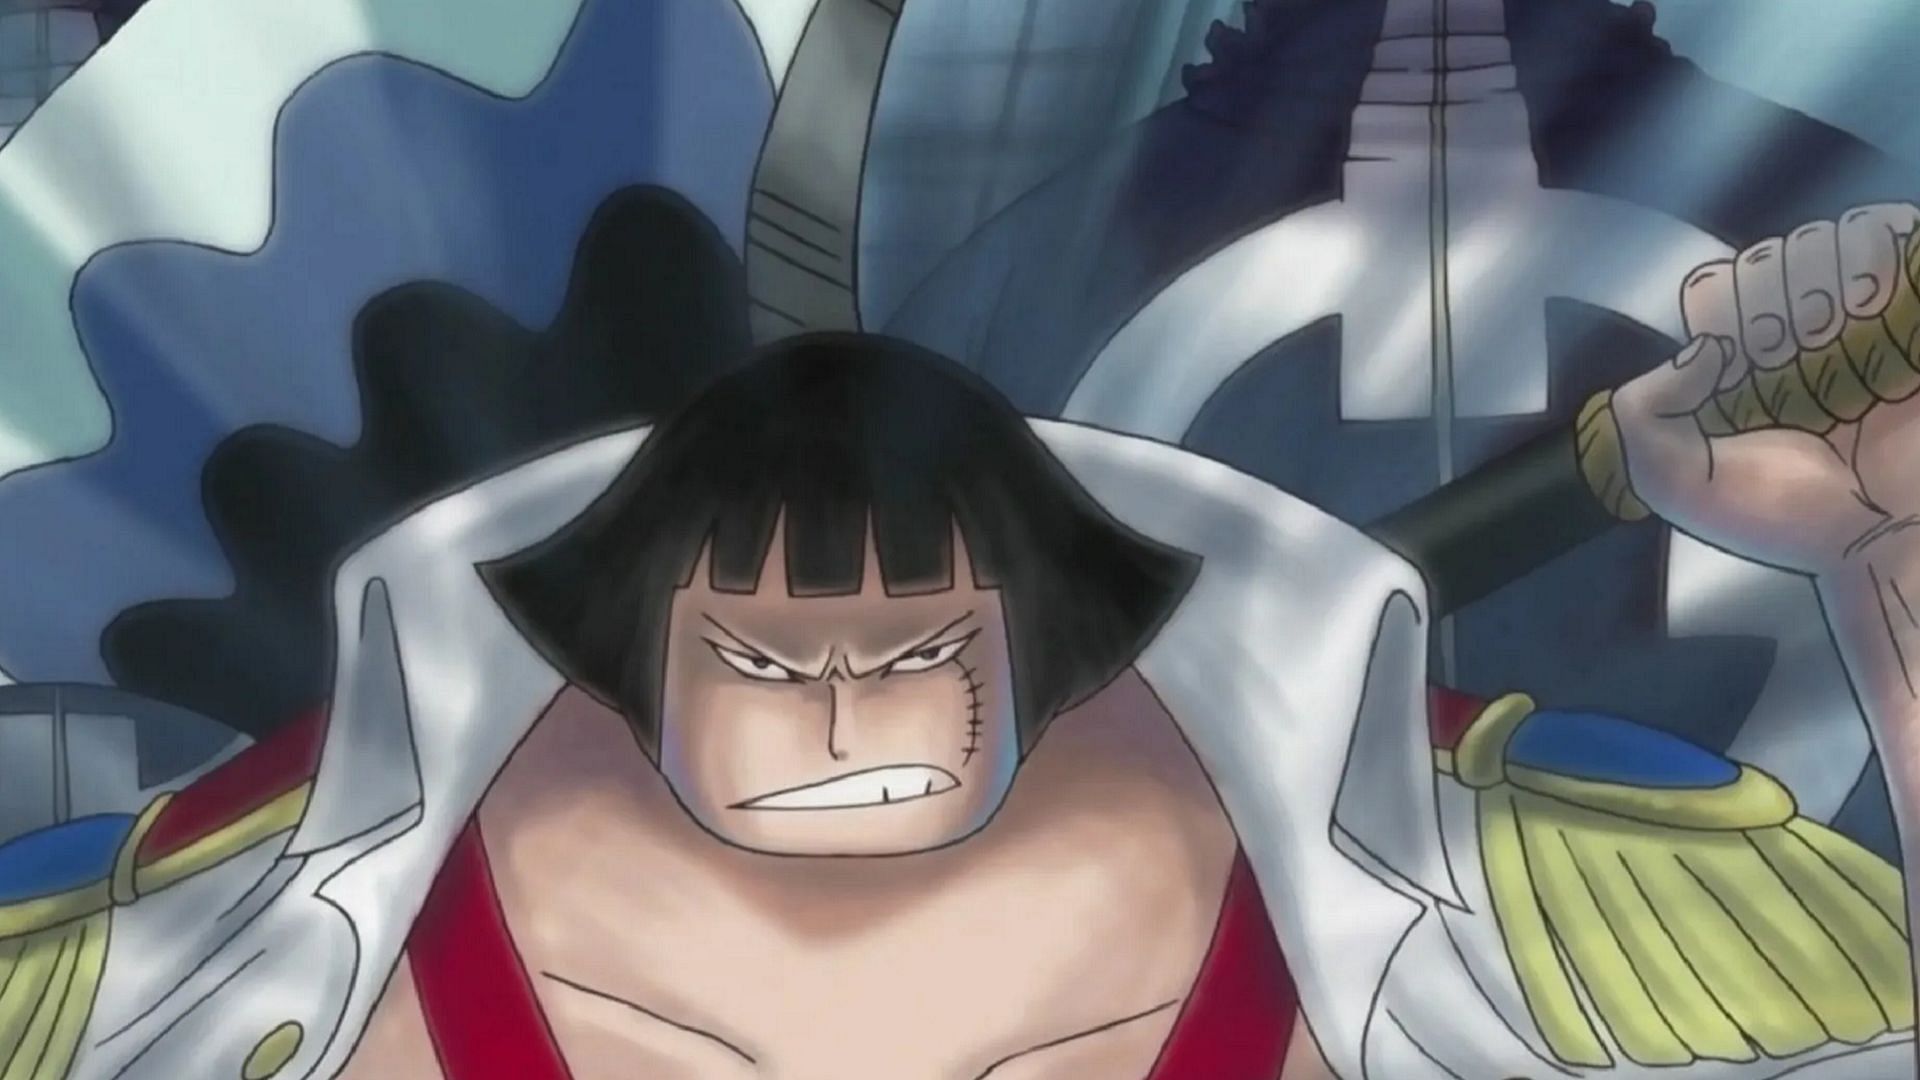 Sentomaru (Image via Toei Animation, One Piece)